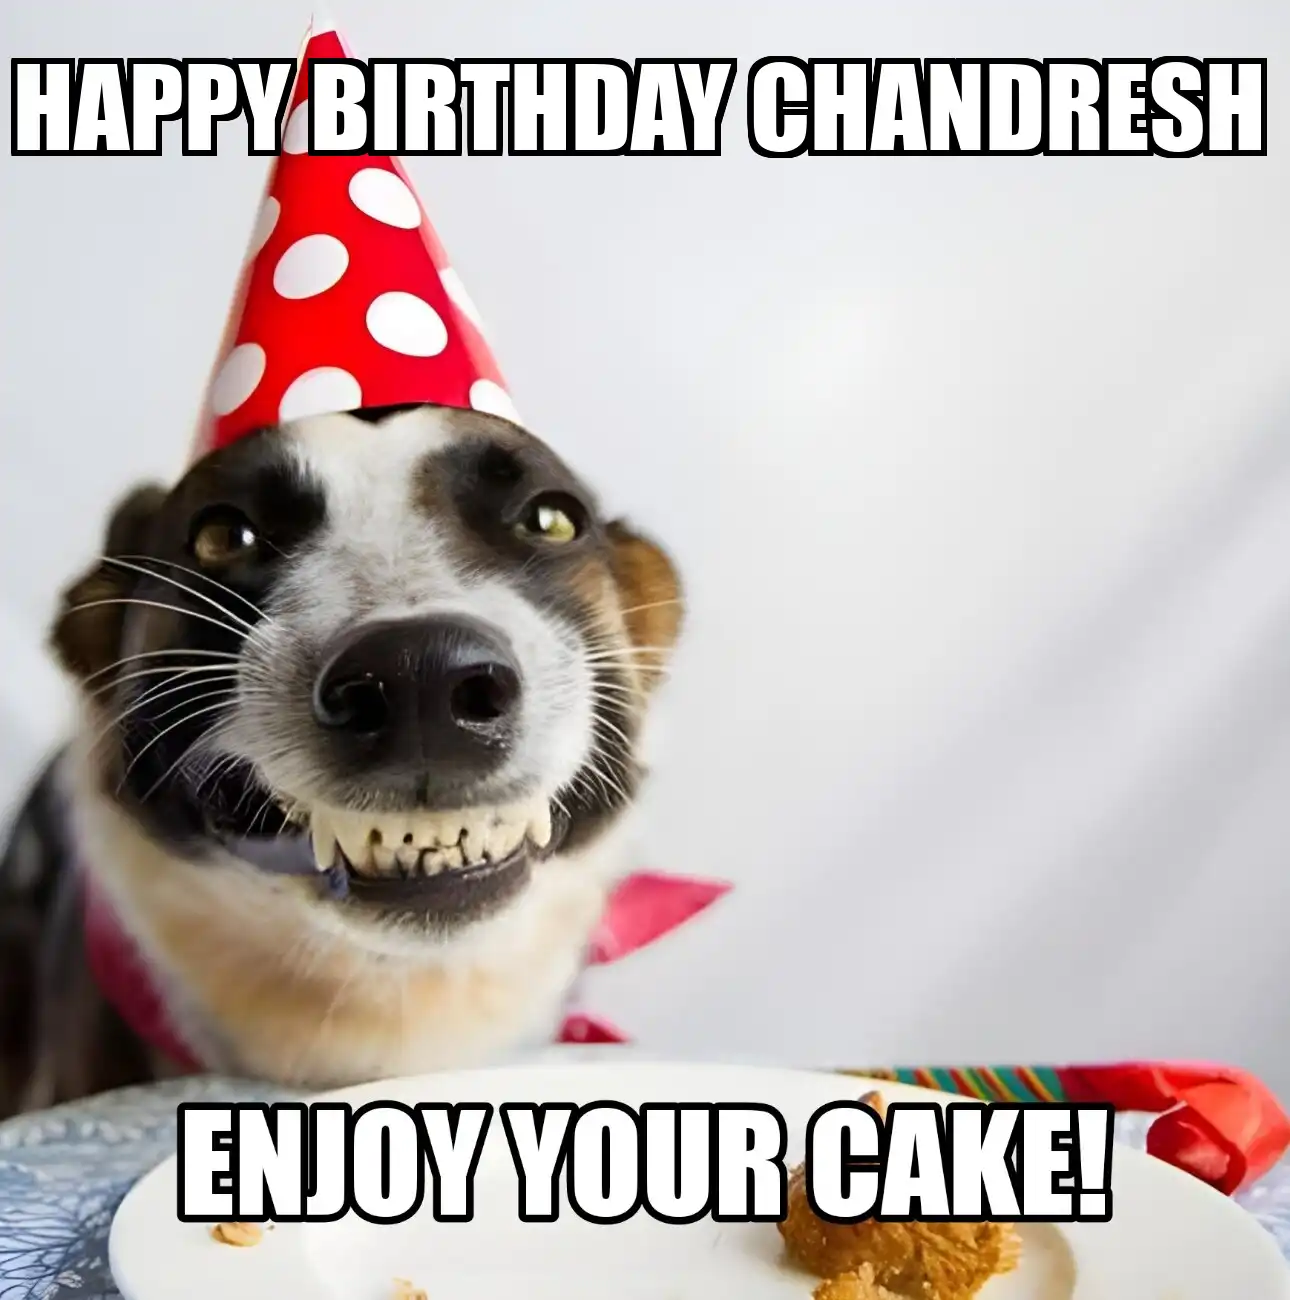 Happy Birthday Chandresh Enjoy Your Cake Dog Meme